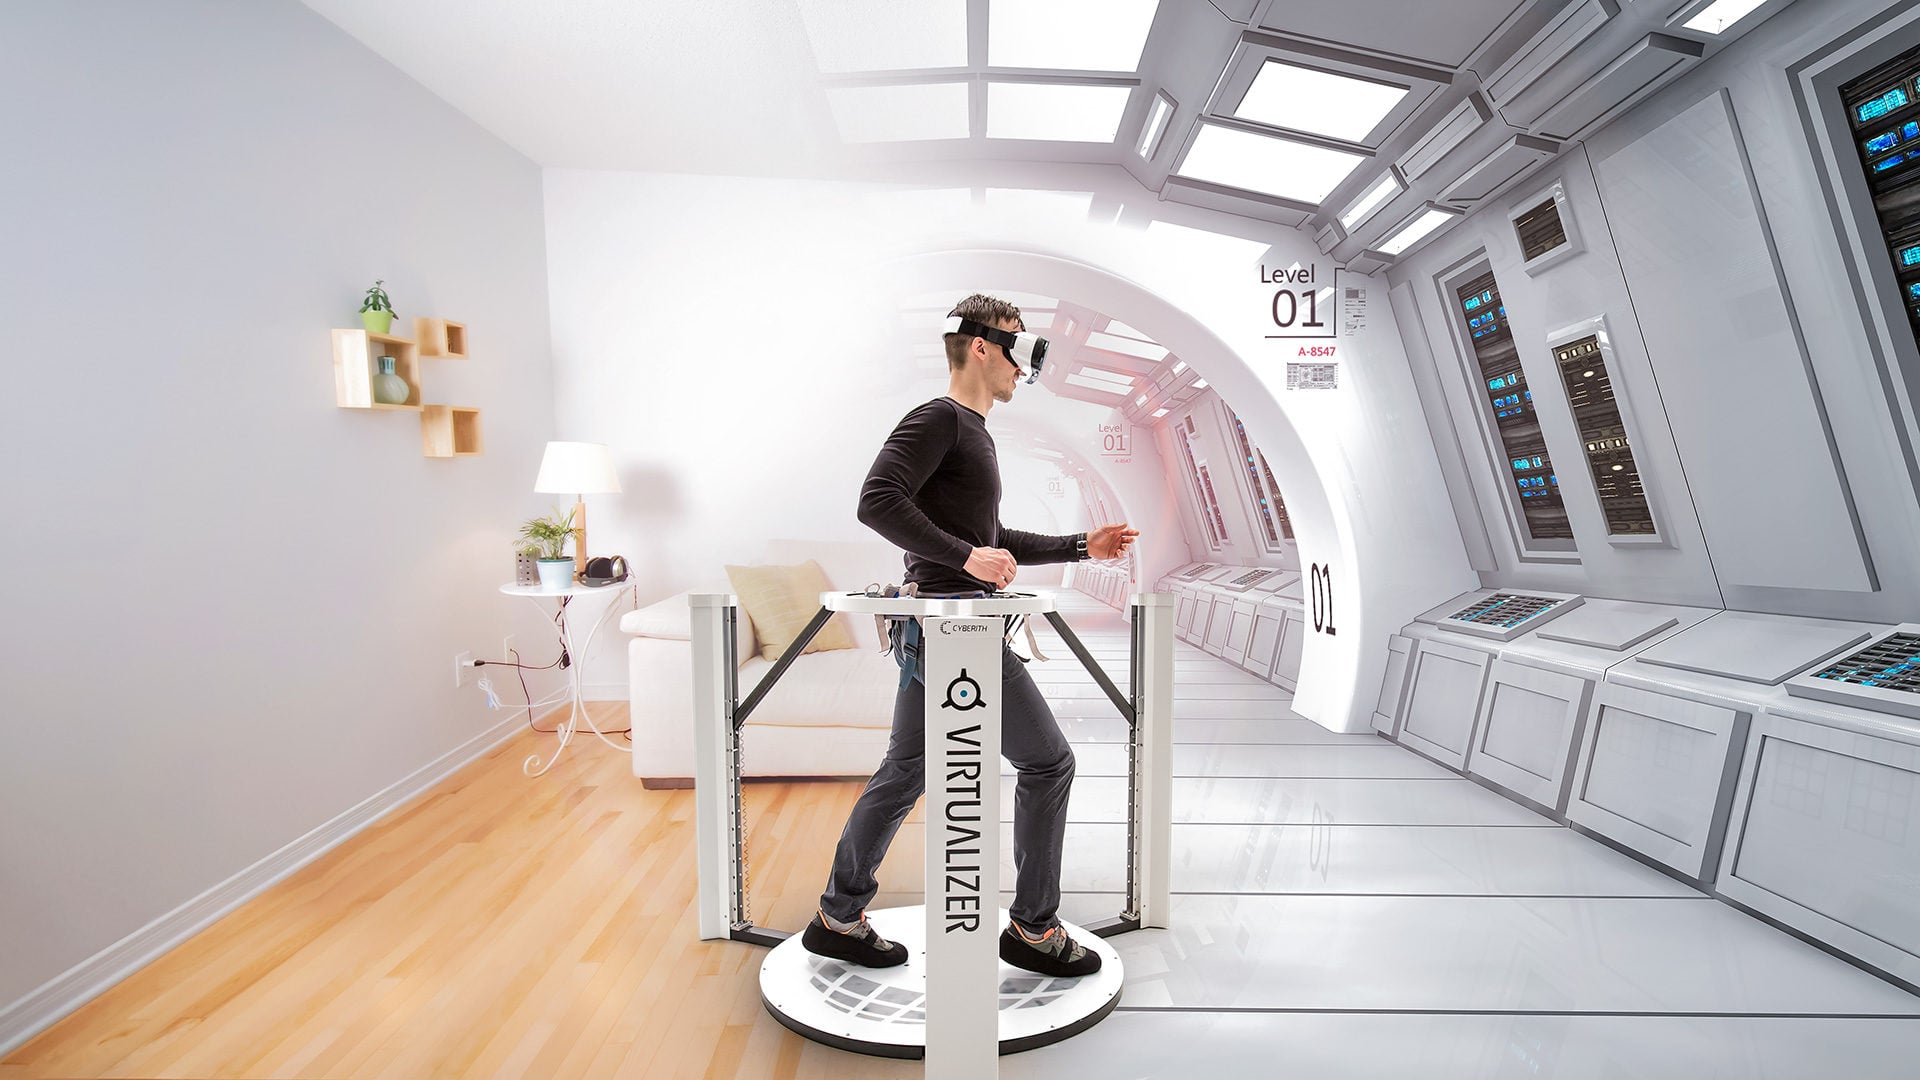 Un projet de salle dédiée à la réalité virtuelle à Strasbourg